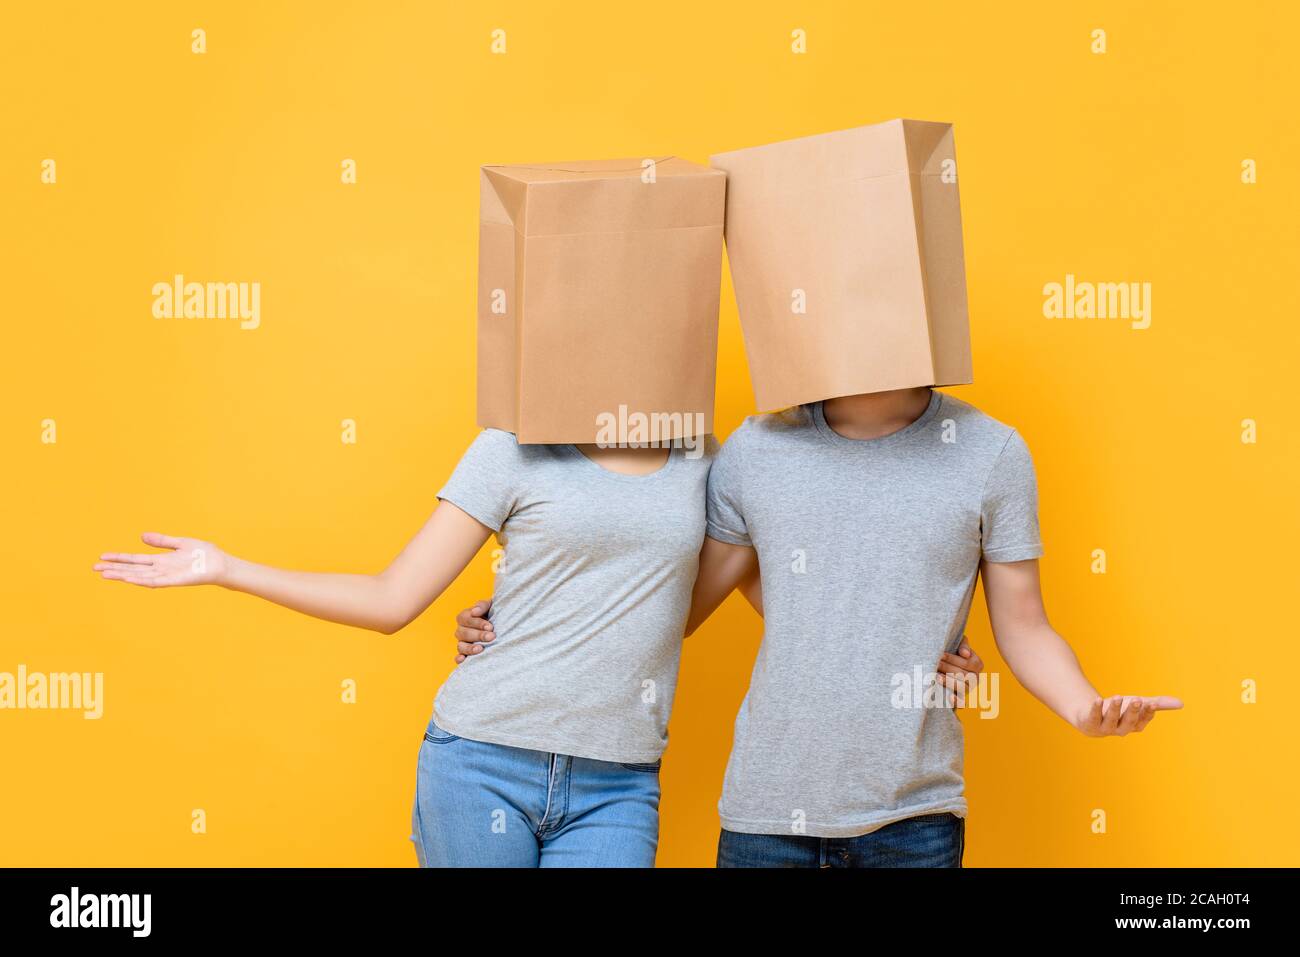 Gesichtsloses anonymes Paar, das Köpfe mit Papiertüten bedeckt und hält Einander tun offene Hand Geste isoliert auf gelben Studio Hintergrund Stockfoto